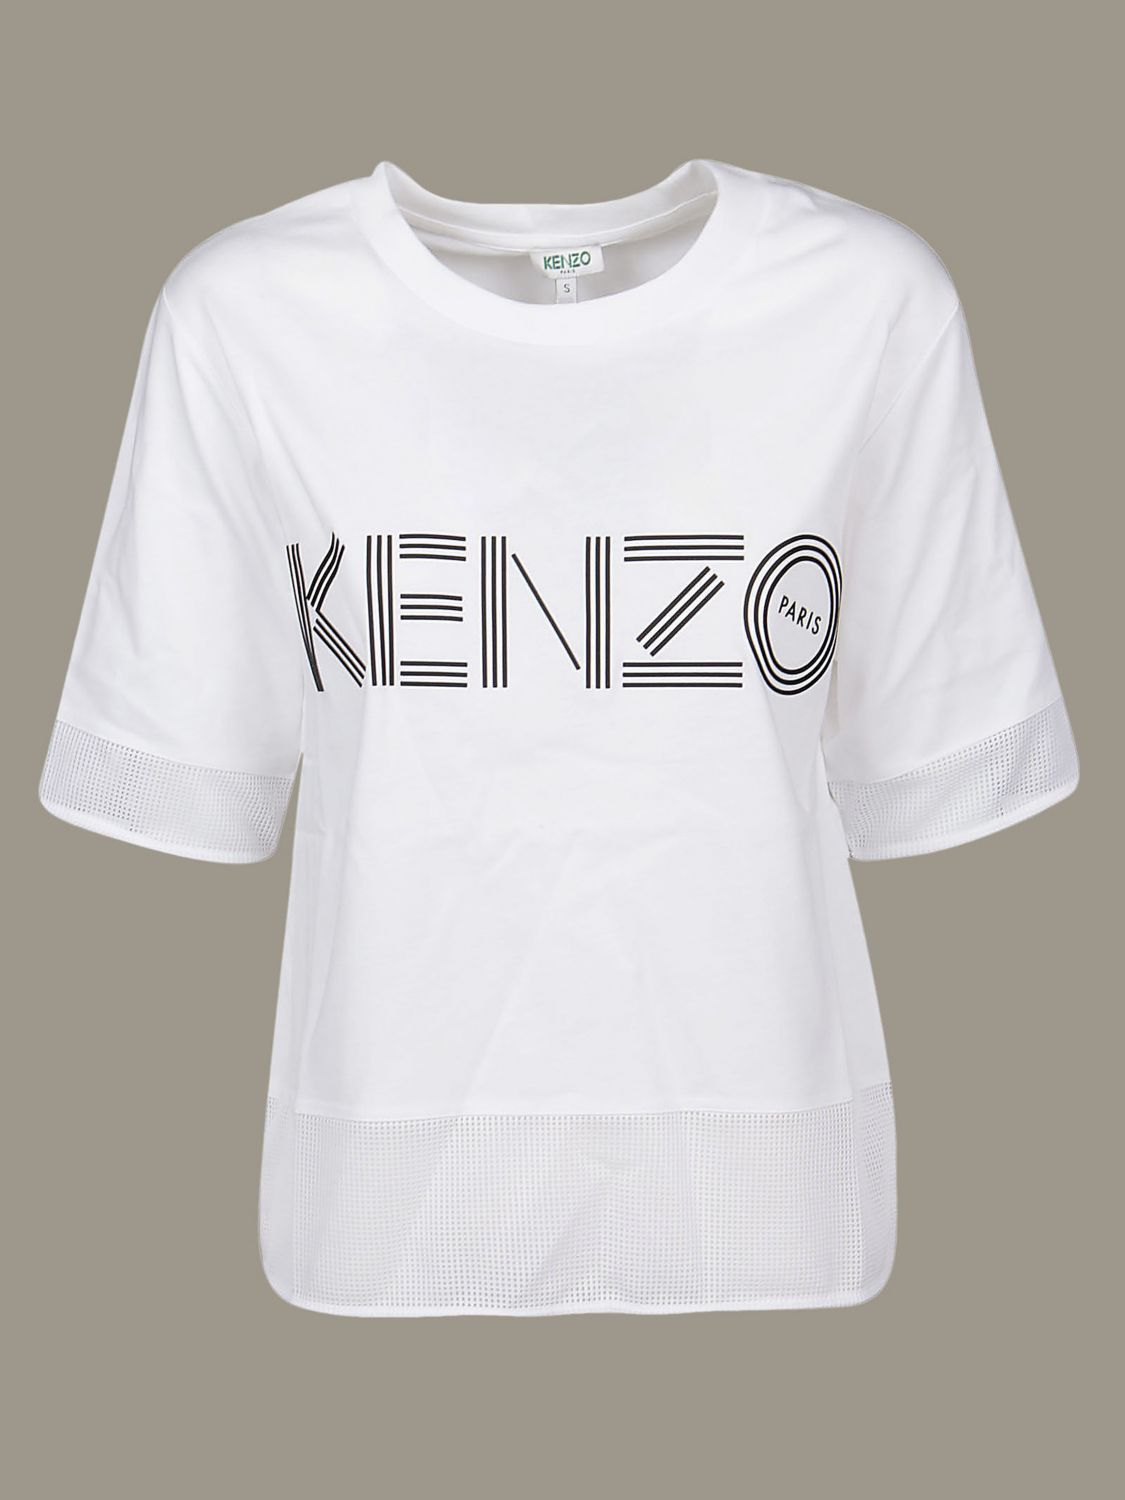 kenzo t shirt women